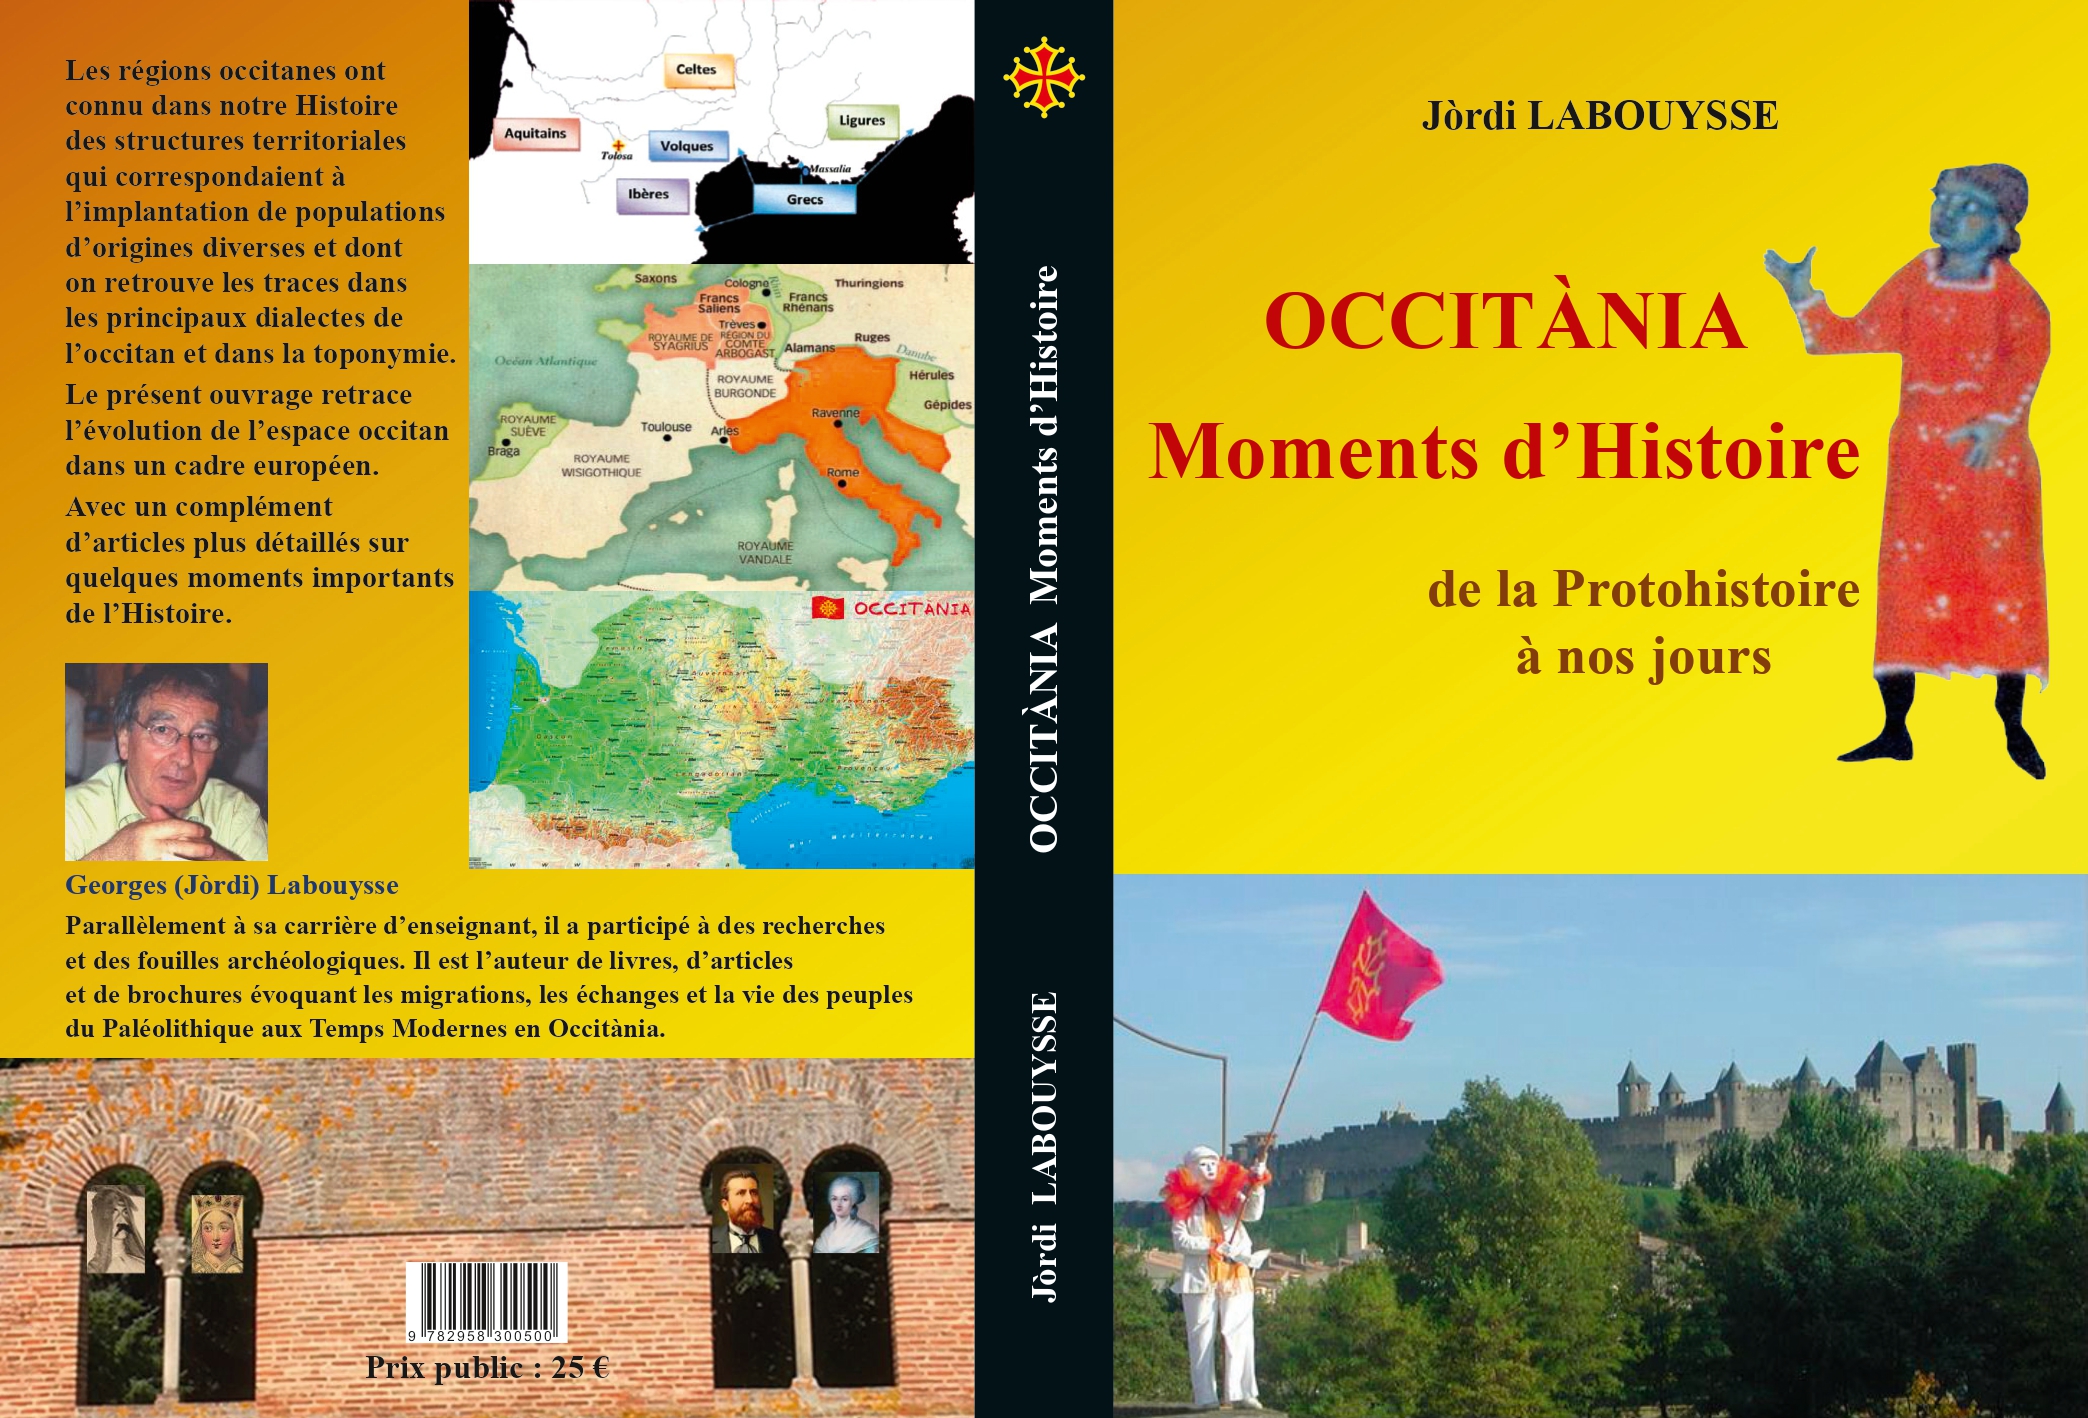 Parution de son nouvel ouvrage ! “Occitània, Moments d’Histoire” de Georges Labouysse